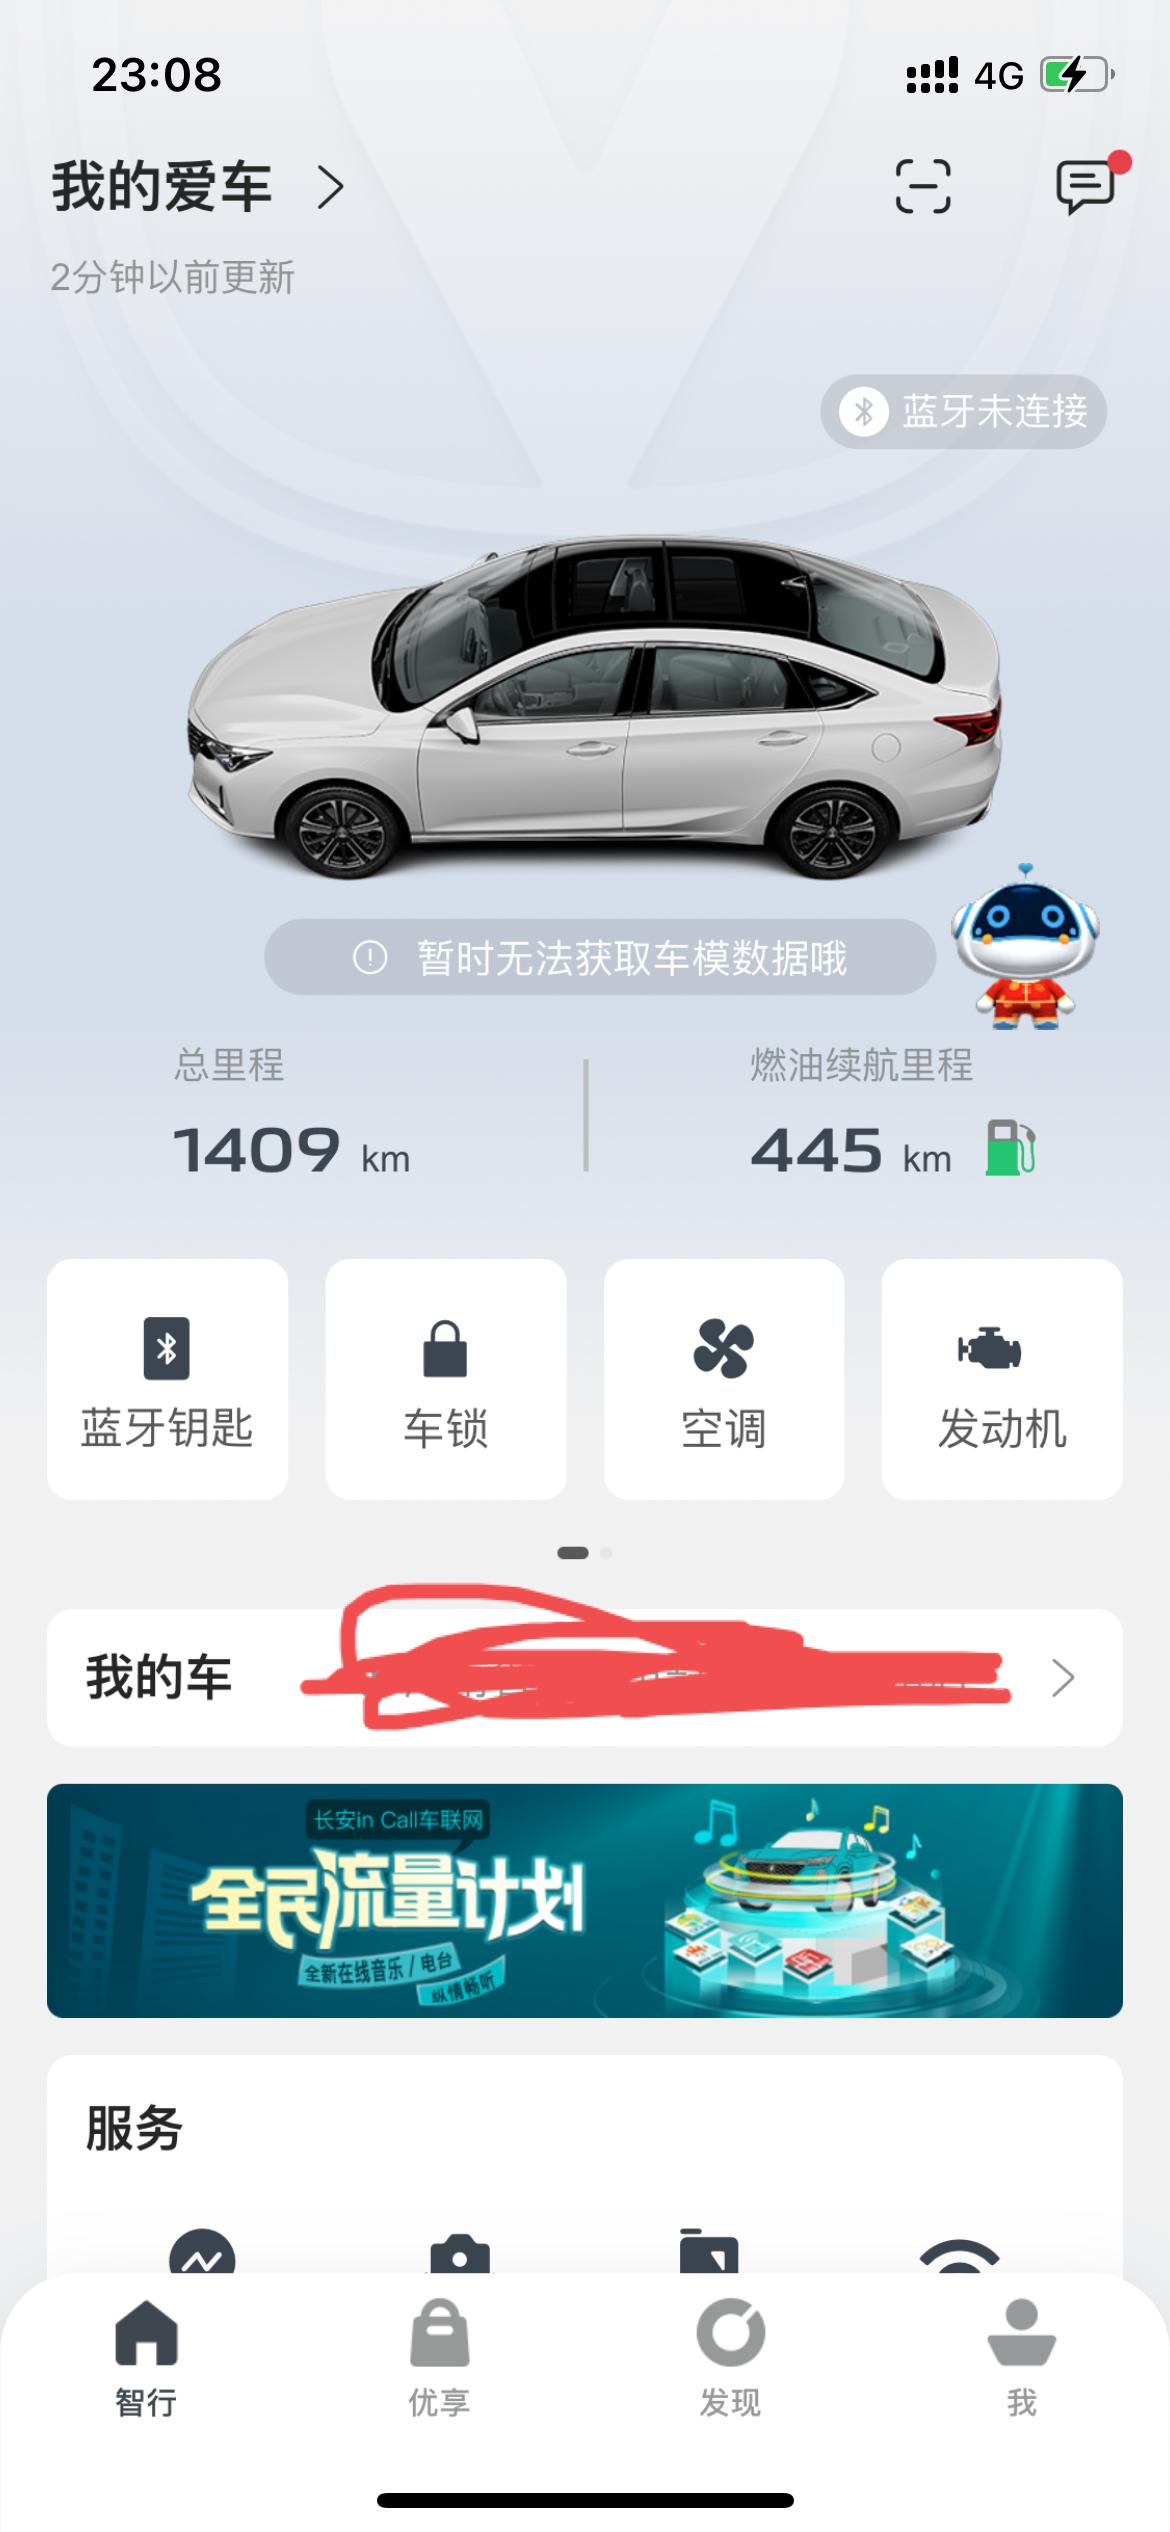 长安锐程CC 手机app显示无法获取车模数据什么意思，刚开始没有